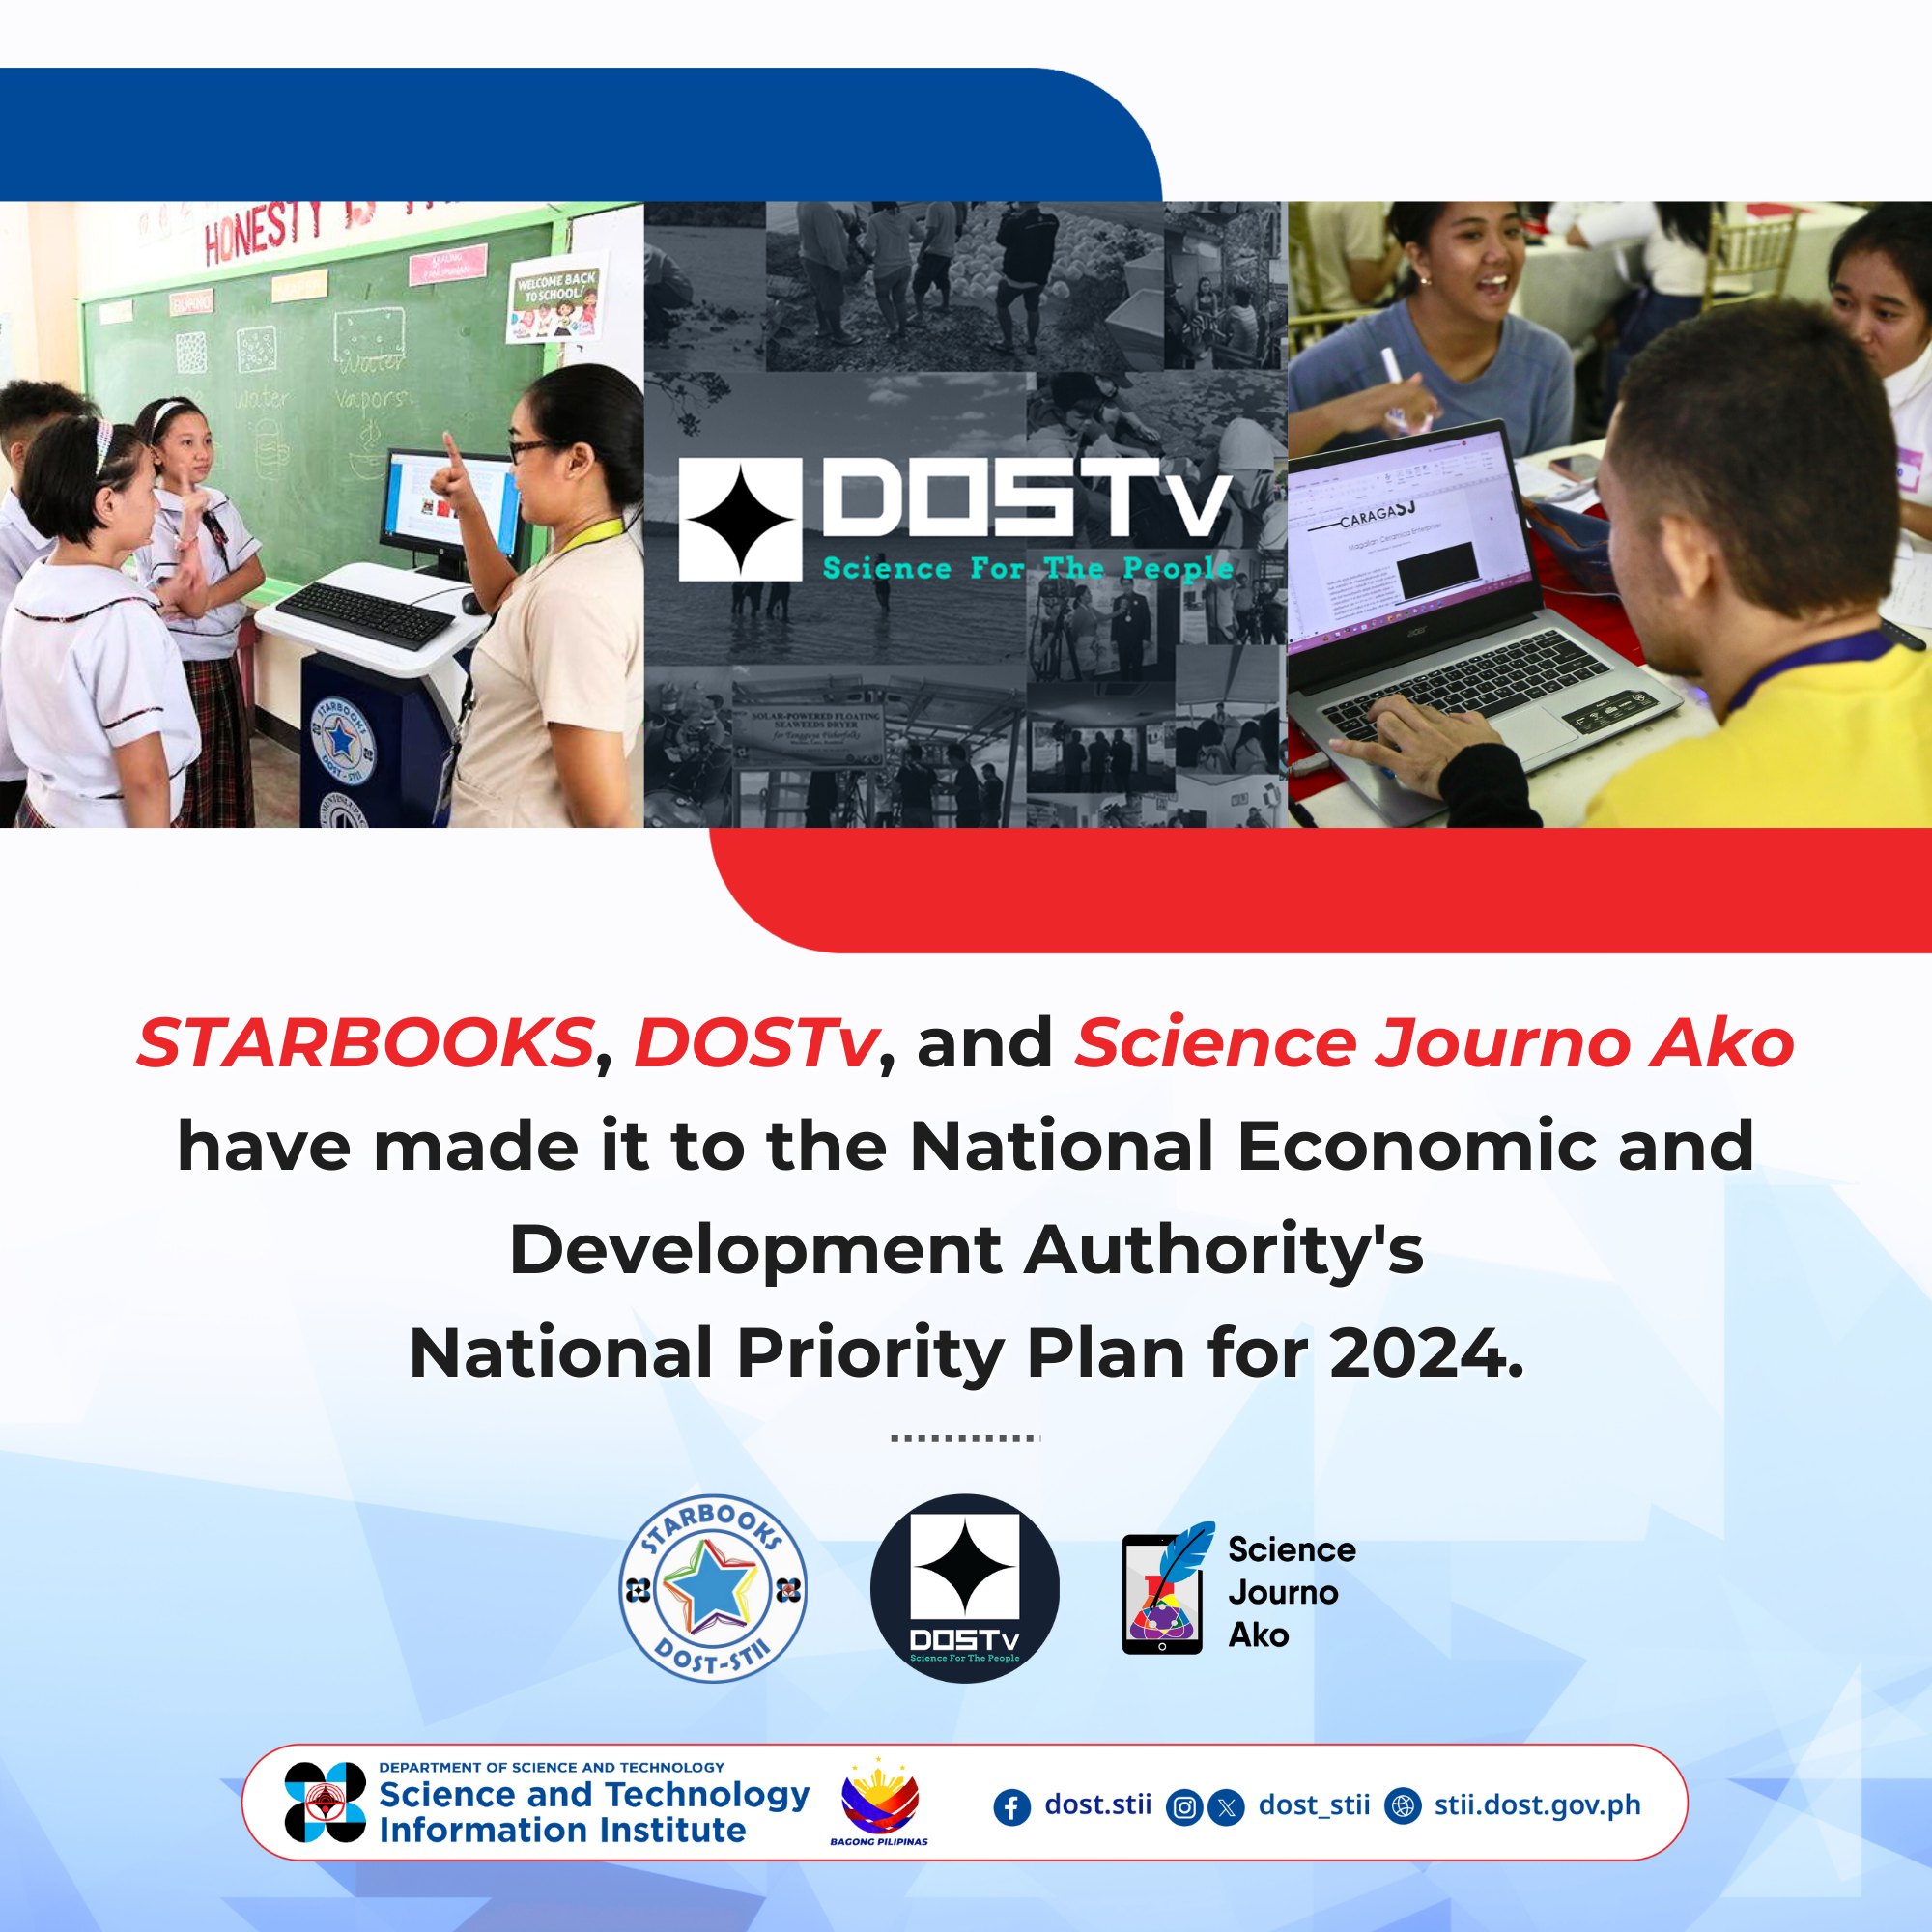 STARBOOKS, DOSTV, Science Journo Ako included in the NEDA's NPP